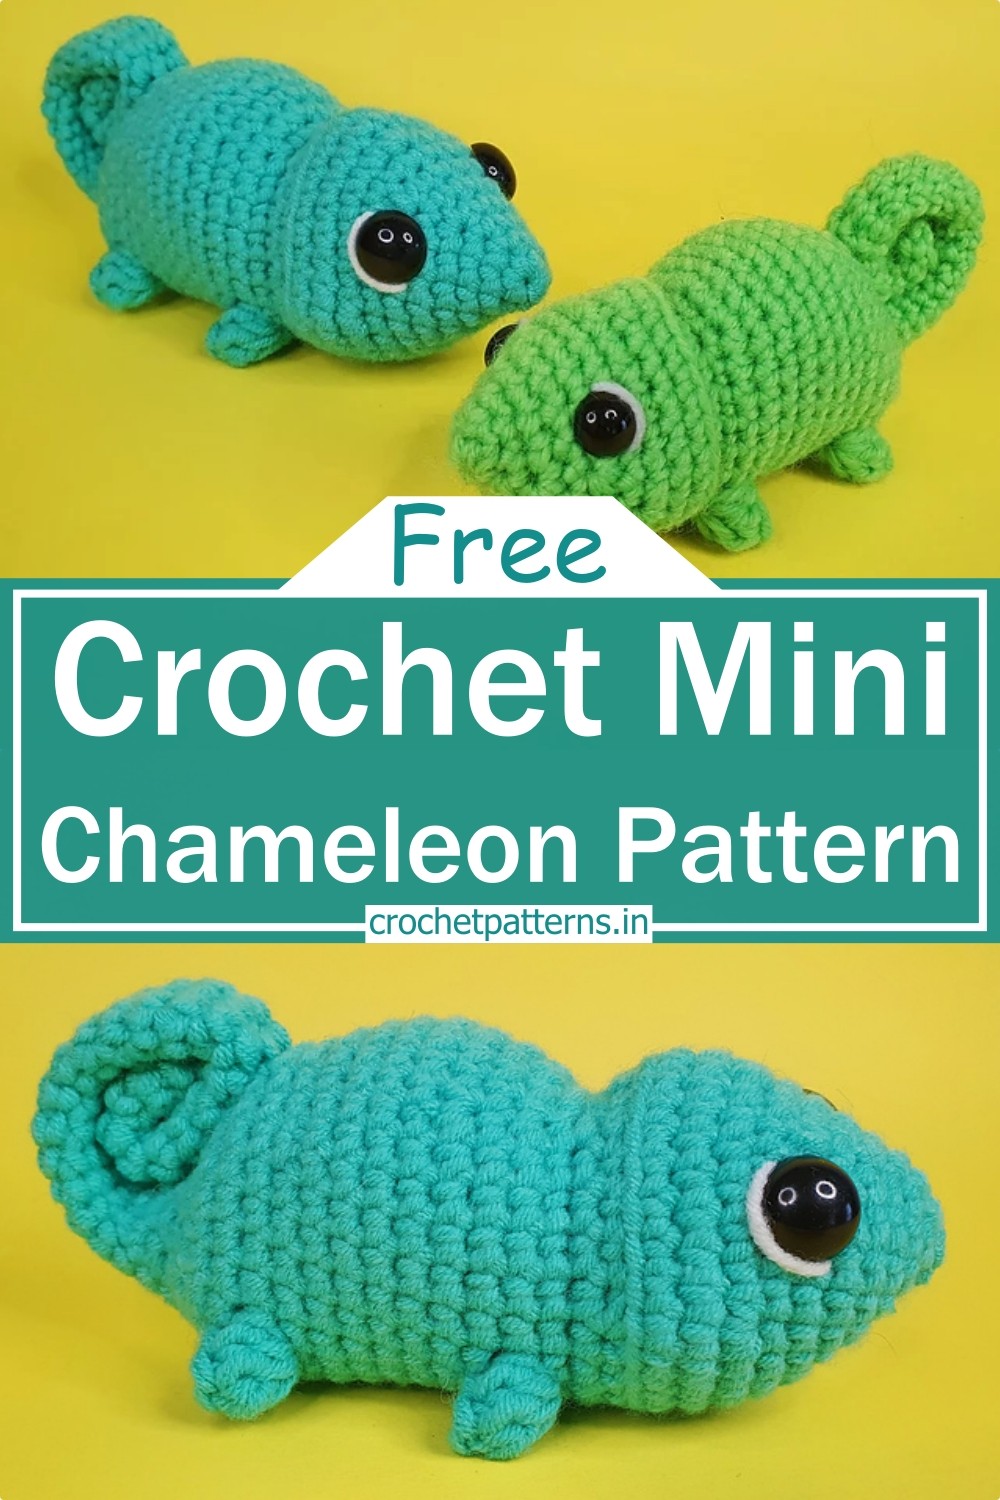 Crochet Mini Chameleon Pattern